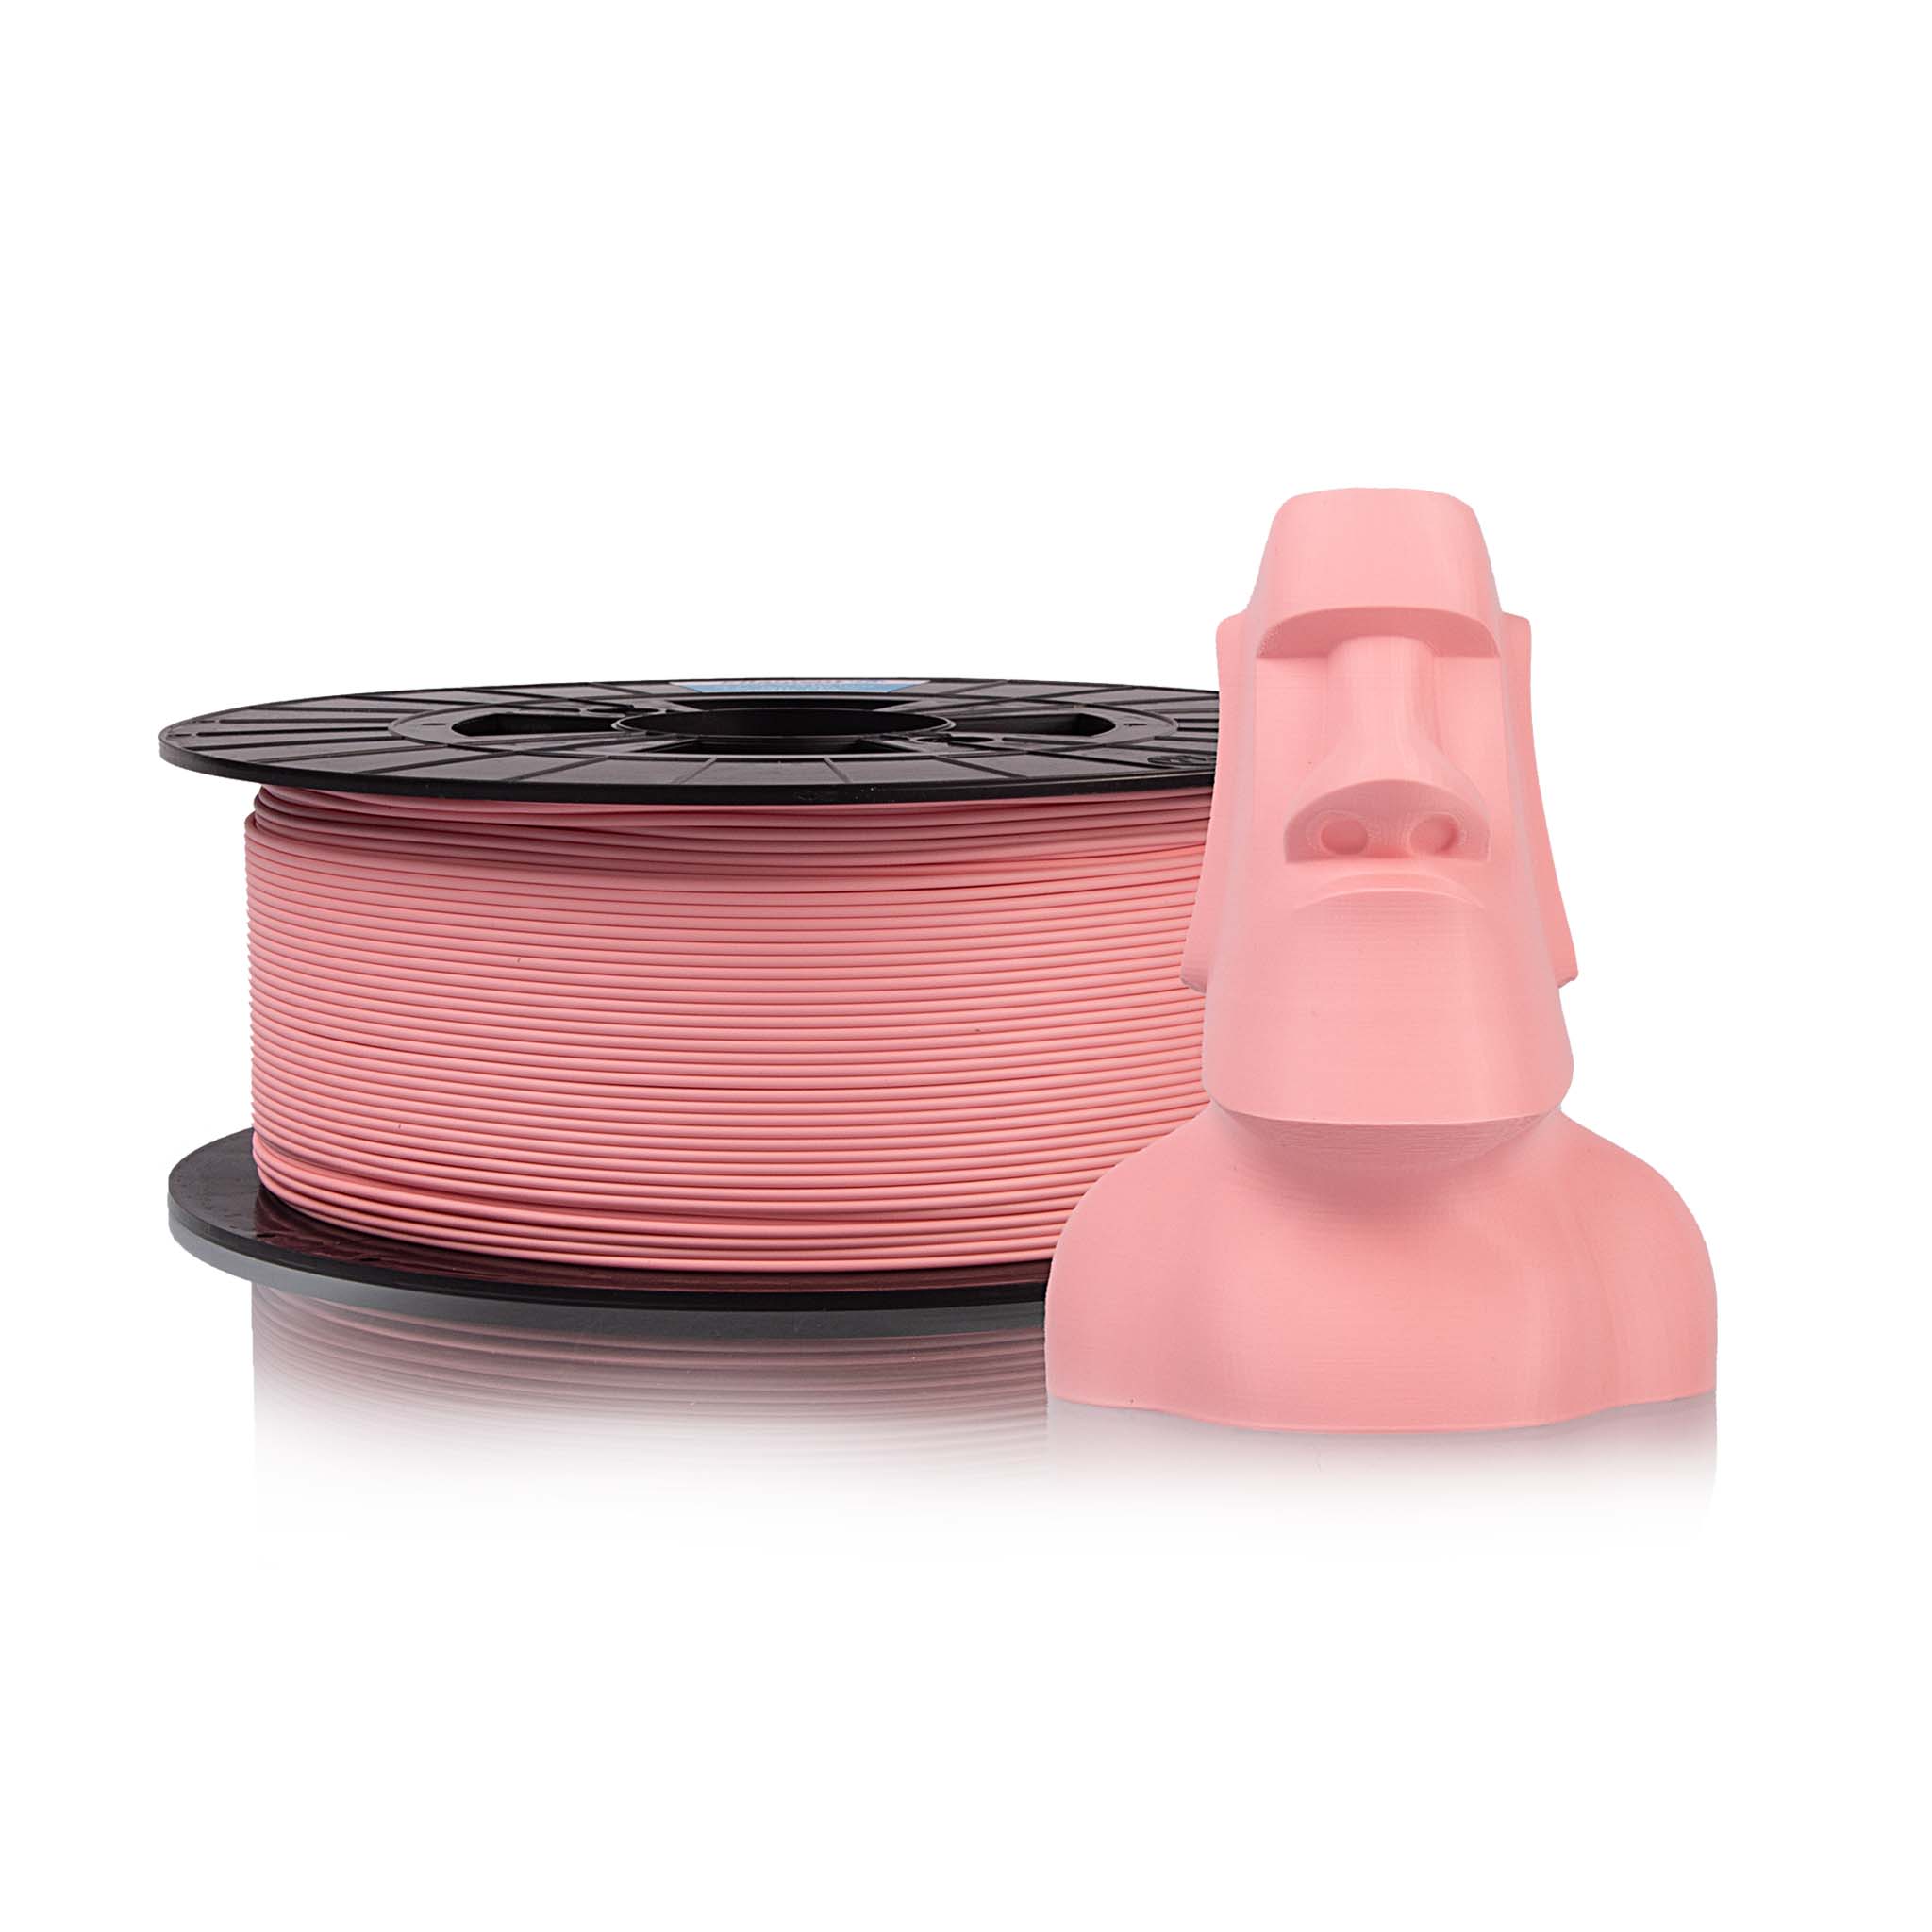 Filament PM PLA+ pastel edition - Bubblegum Pink Hmotnost návinu: 1 kg, Průměr struny: 1.75 mm